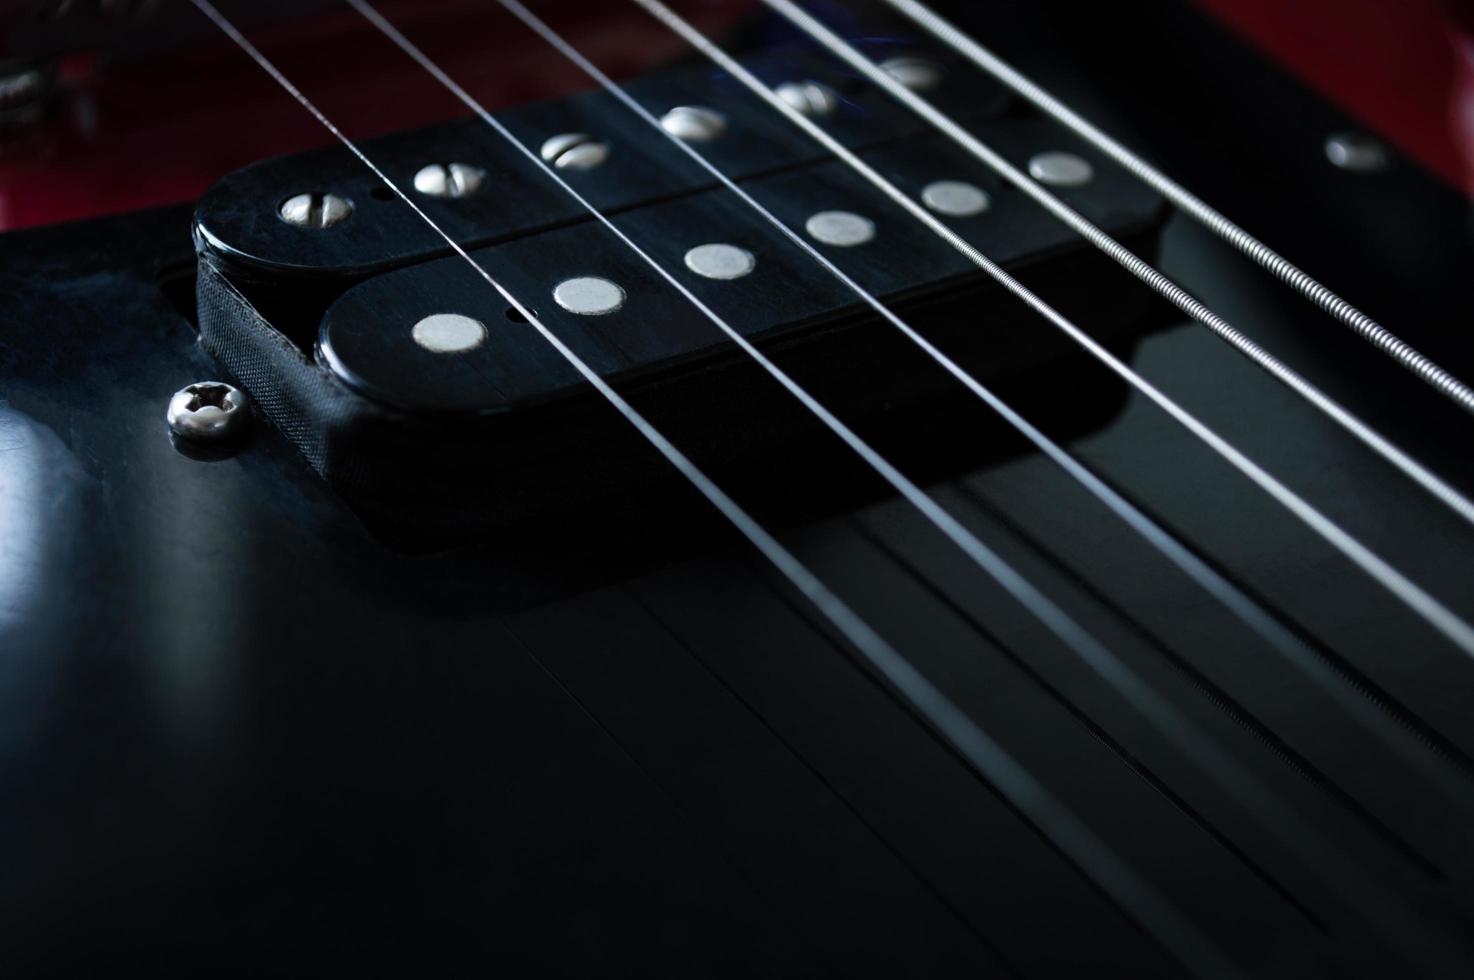 closeup chitarra elettrica rossa su sfondo nero foto